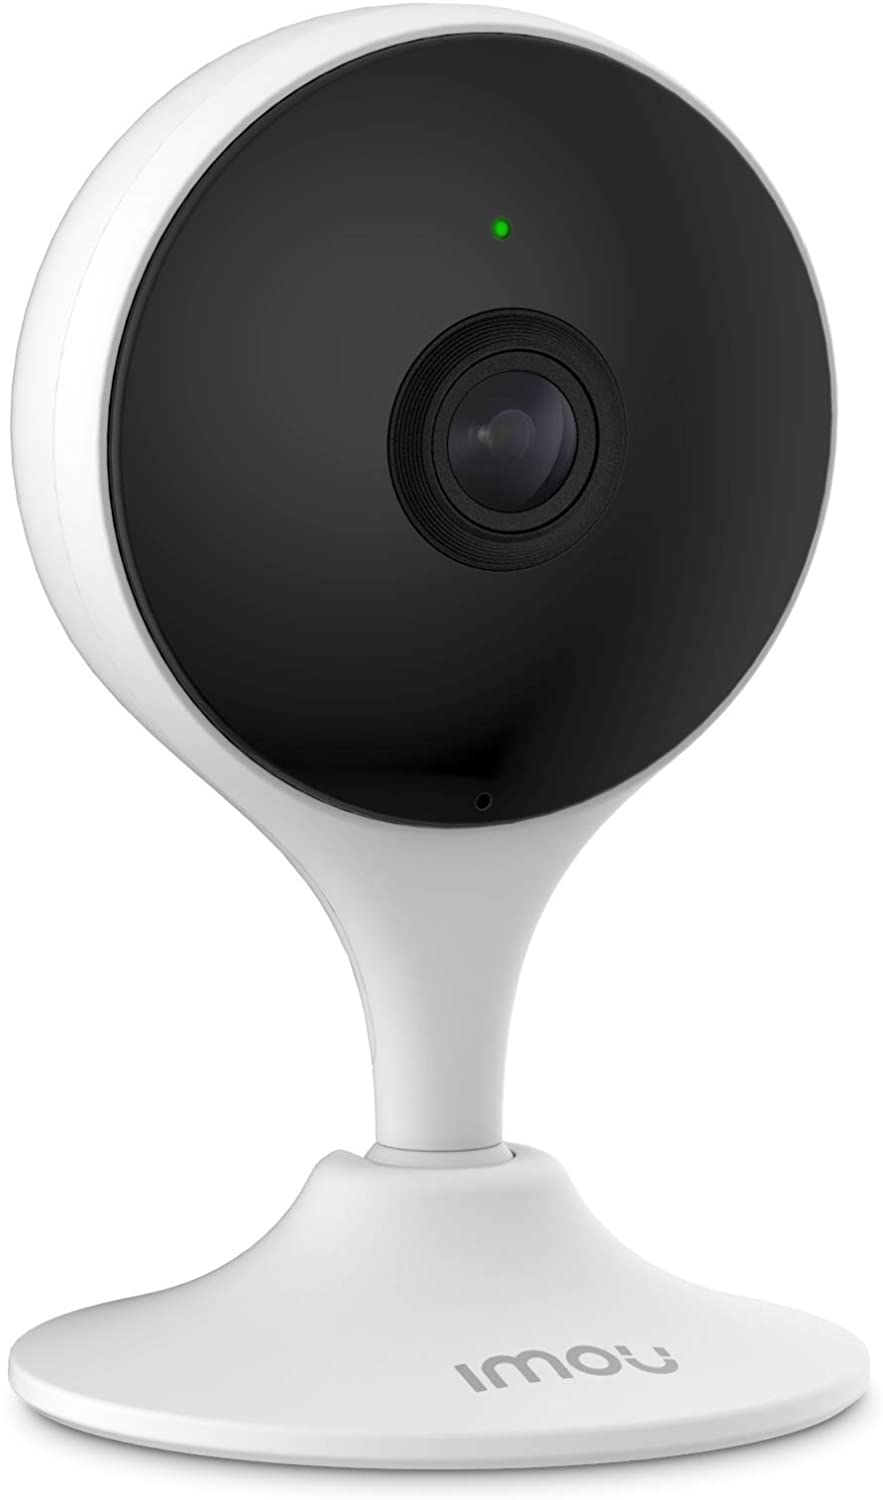 كاميرا مرقبة 1080 بكسل  من IMOU C22EN، كاميرا المراقبة المنزلية مع الكشف عن الإنسان ، قناع الخصوصية ، الرؤية الليلية ثنائية الاتجاه